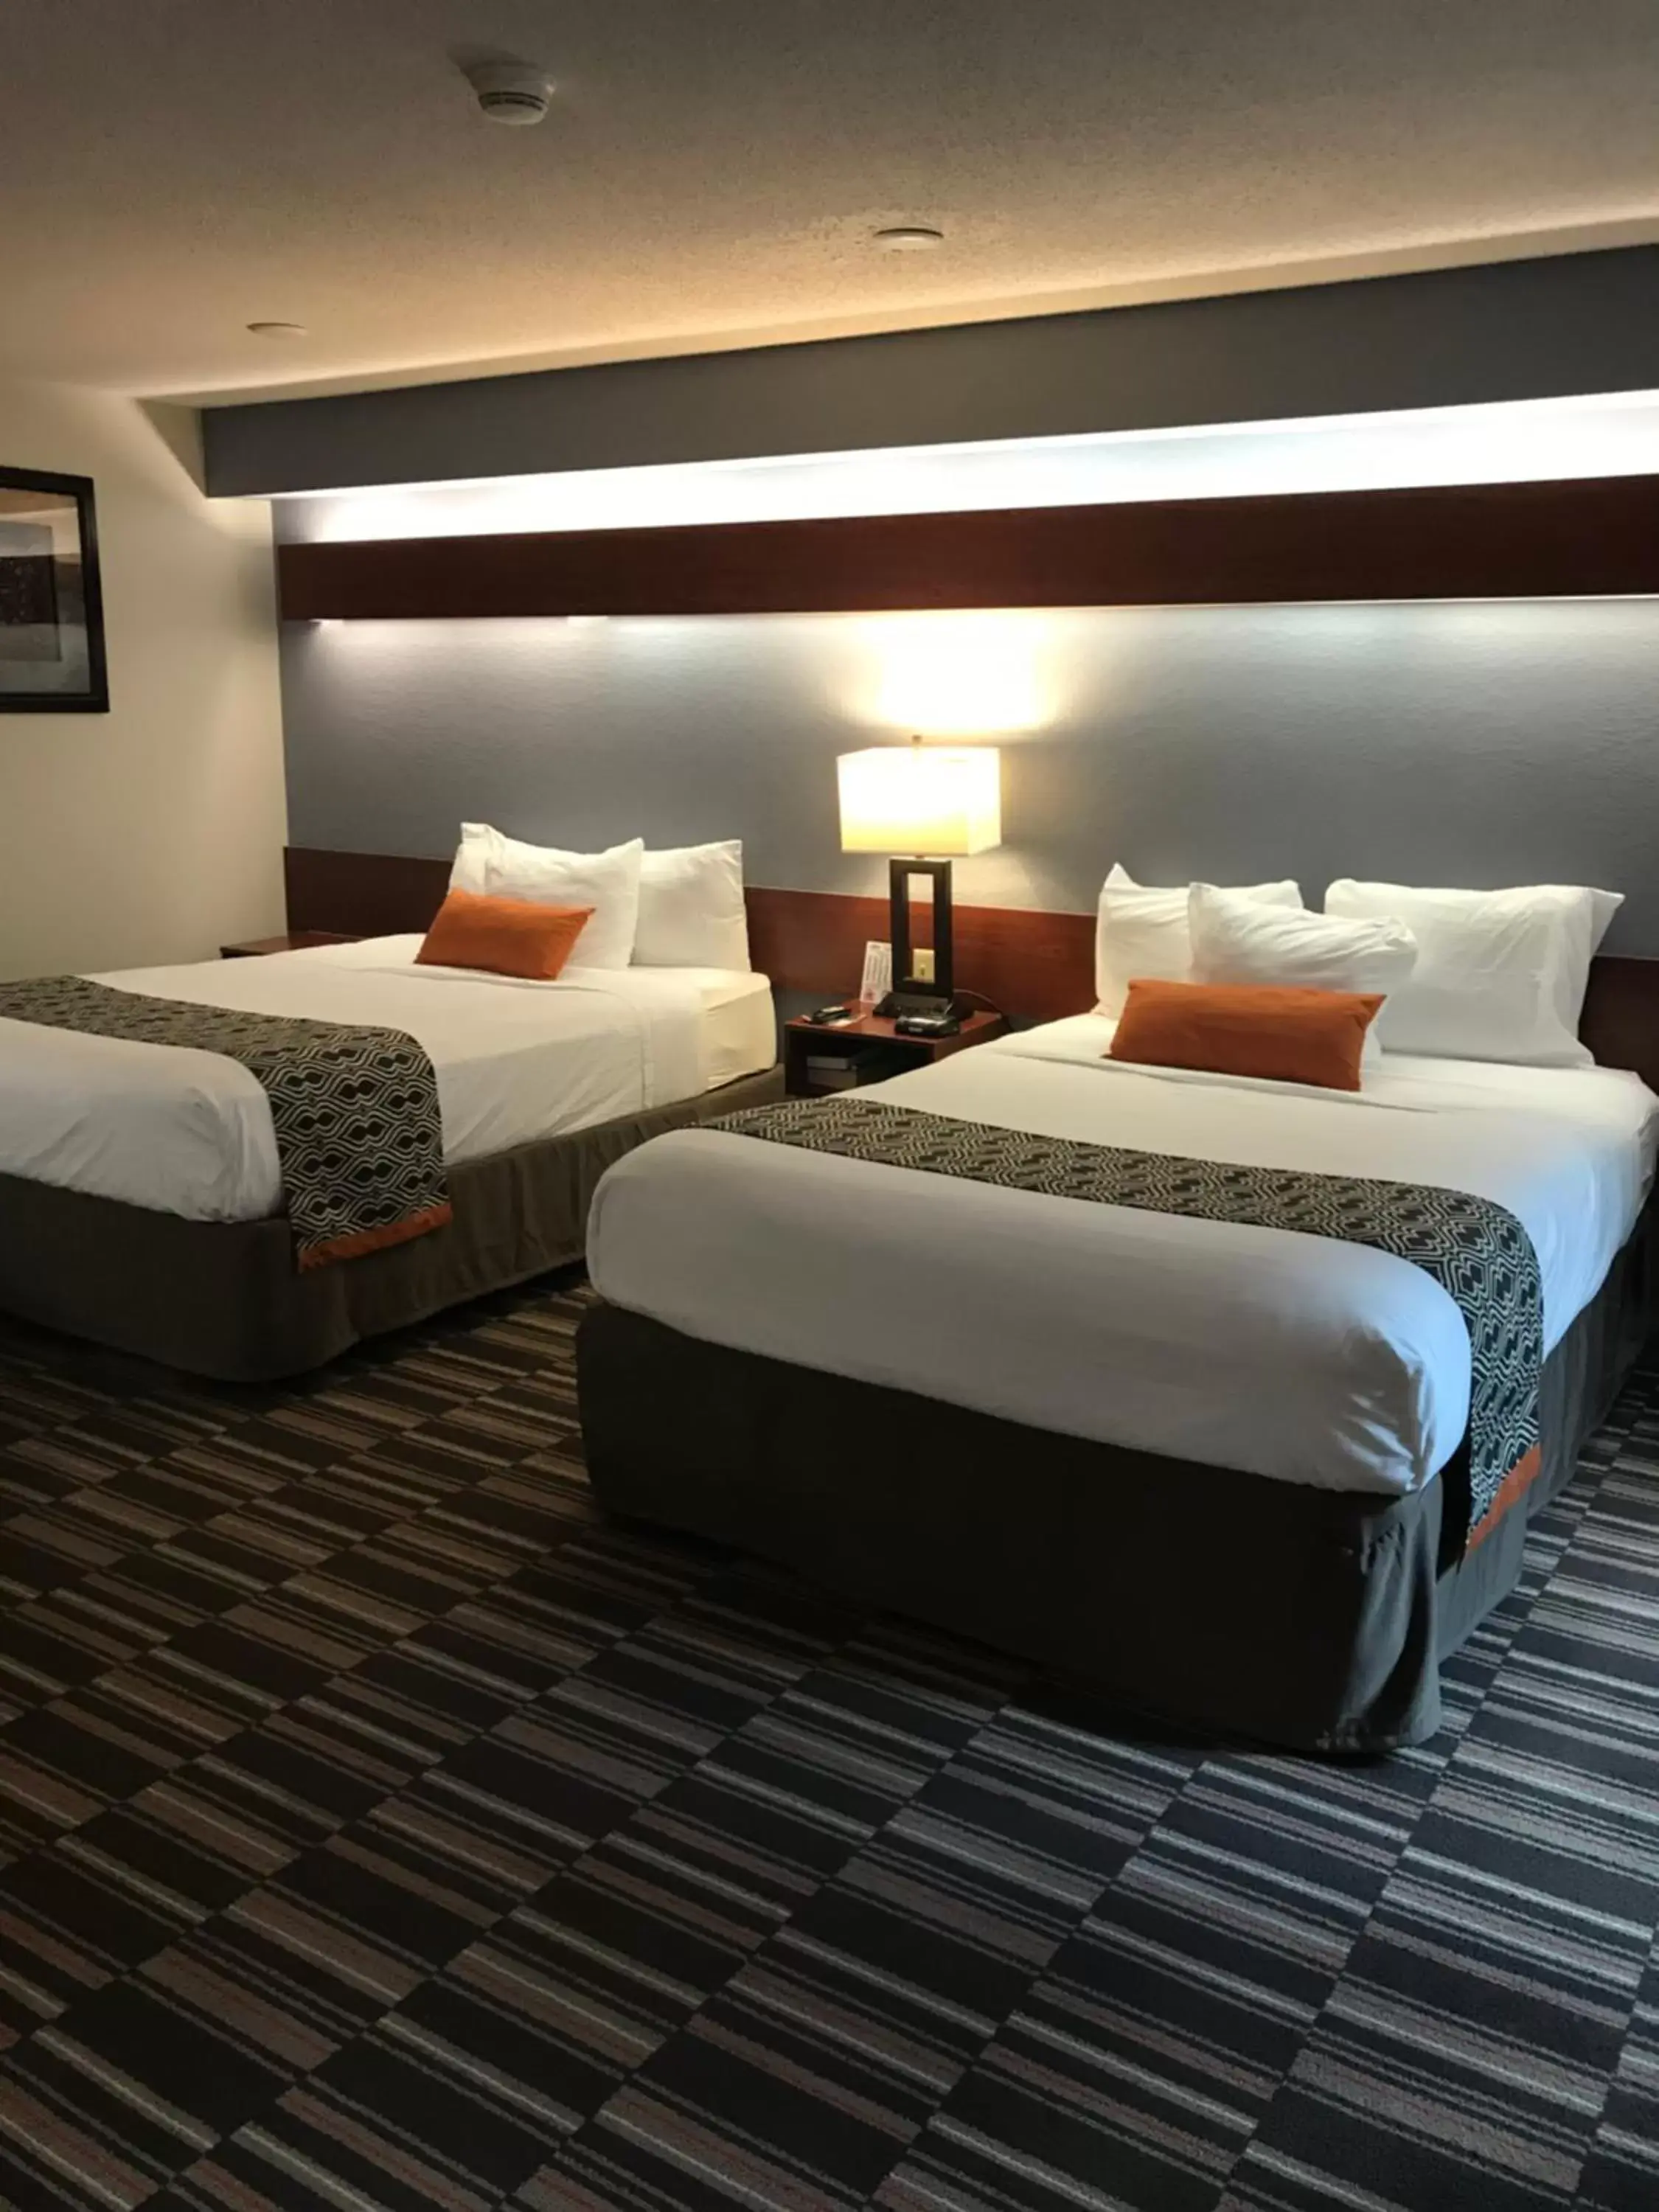 Bed in Microtel Inn & Suites Urbandale